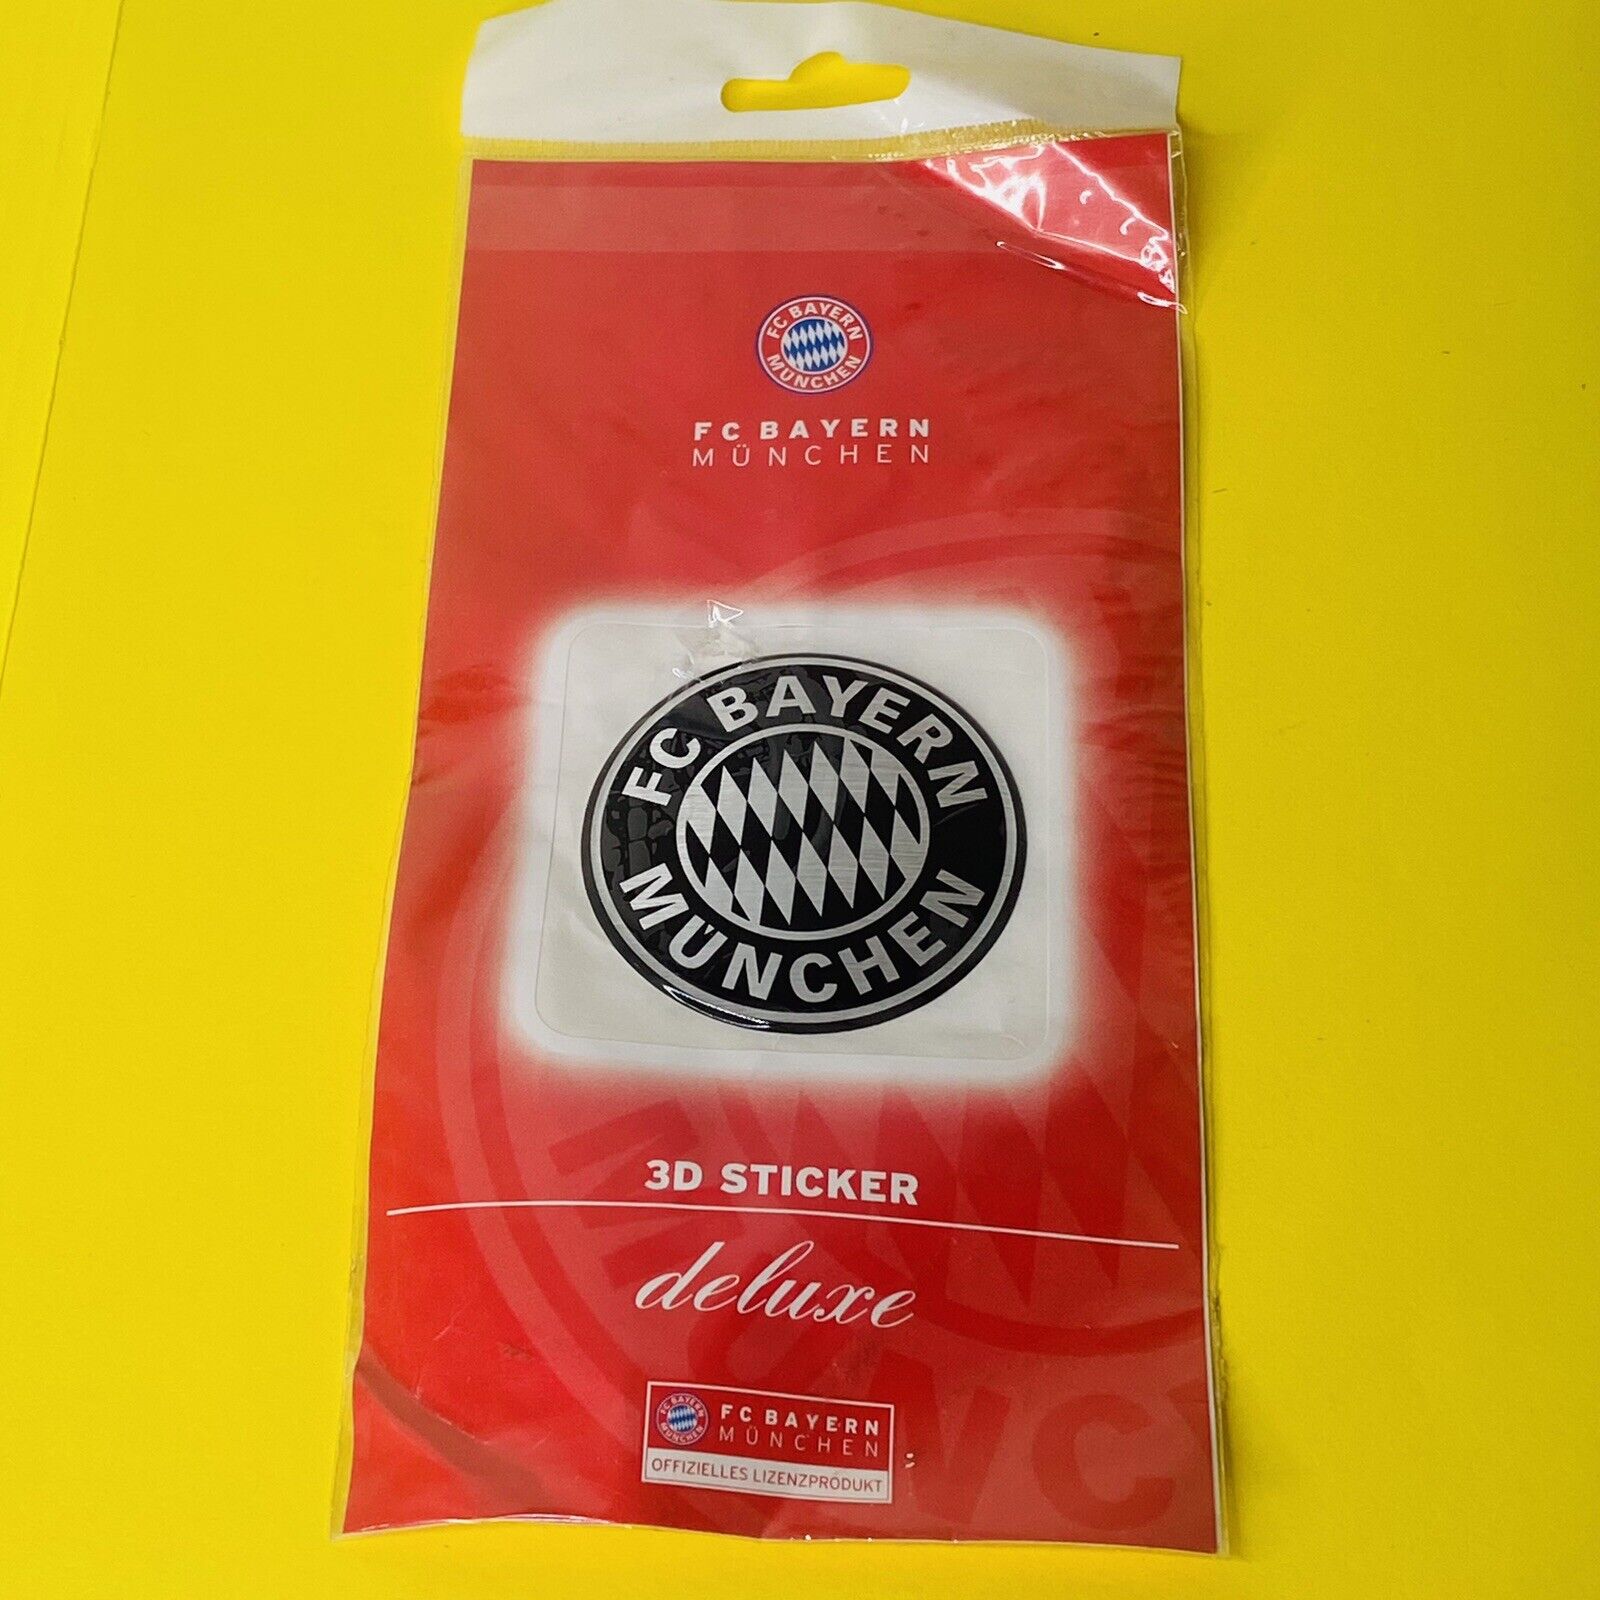 FC Bayern München AG Sticker 3D Deluxe Redline Round